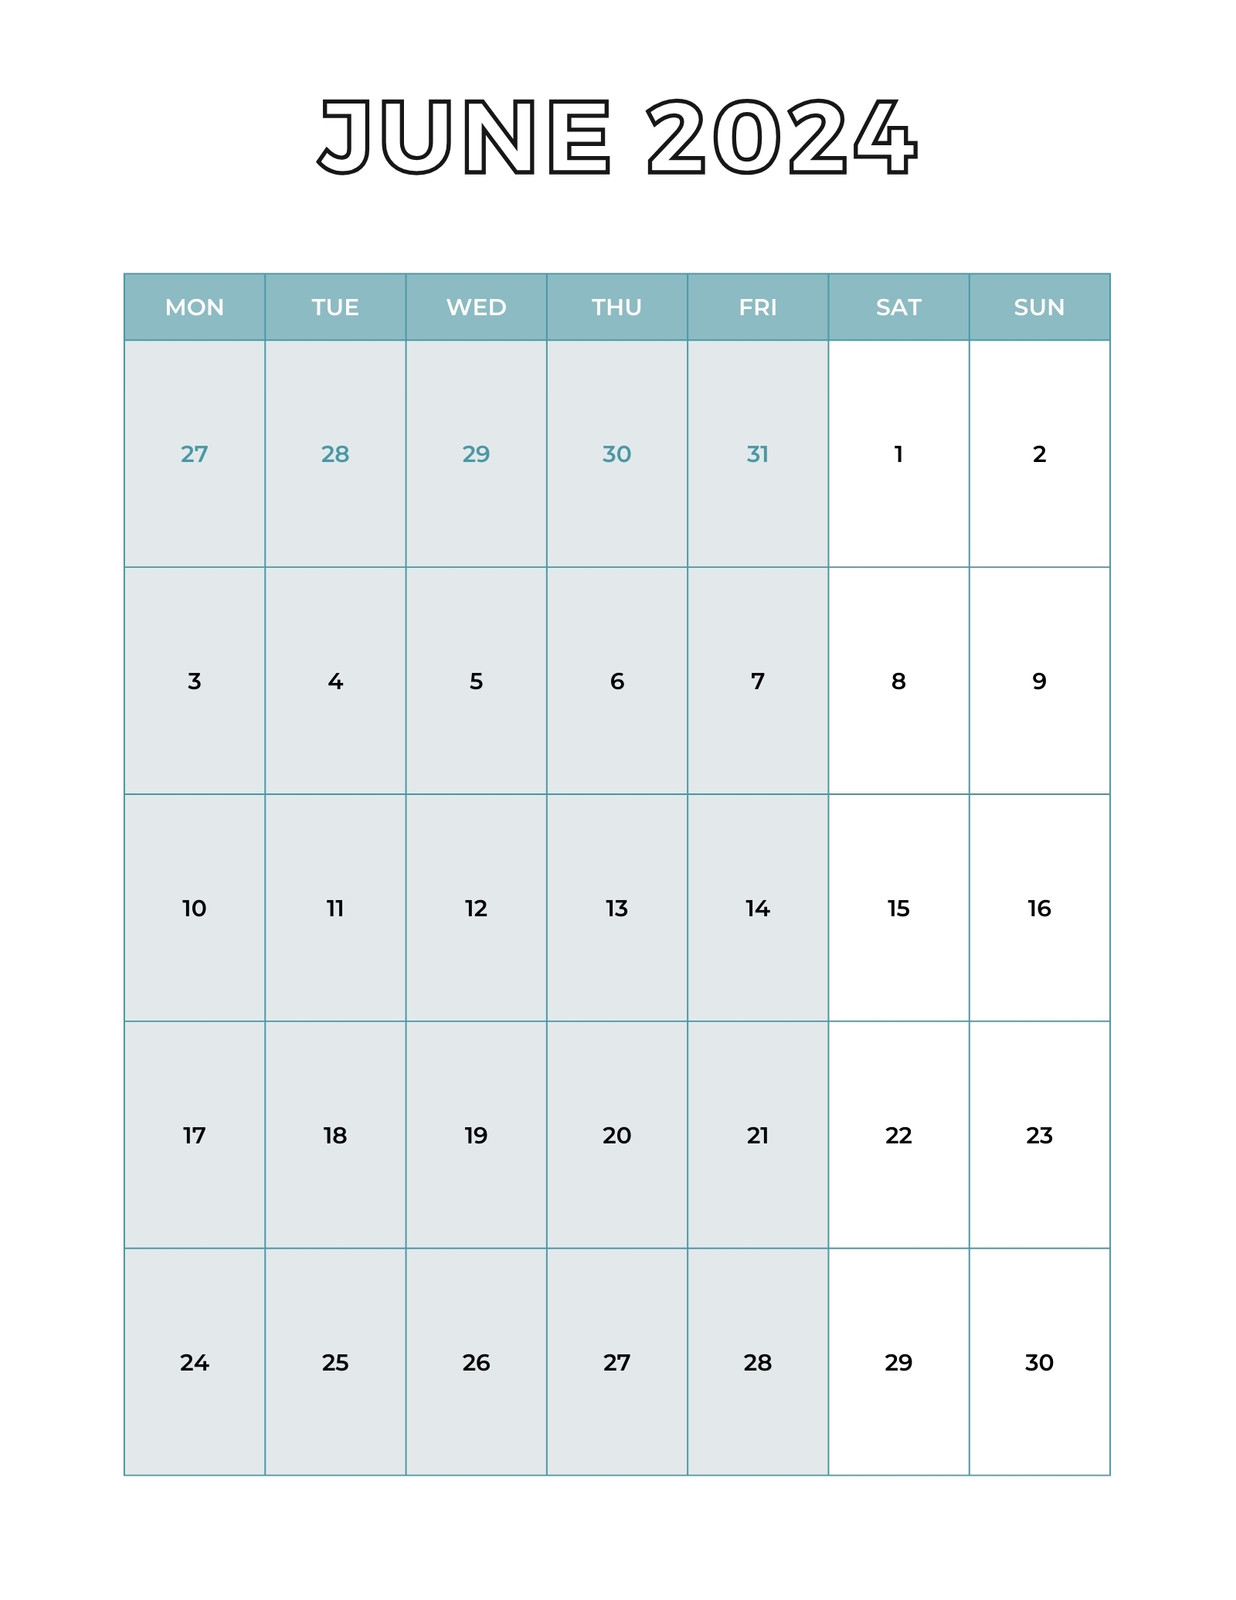 June 2020 Bullet Journal Calendar Template